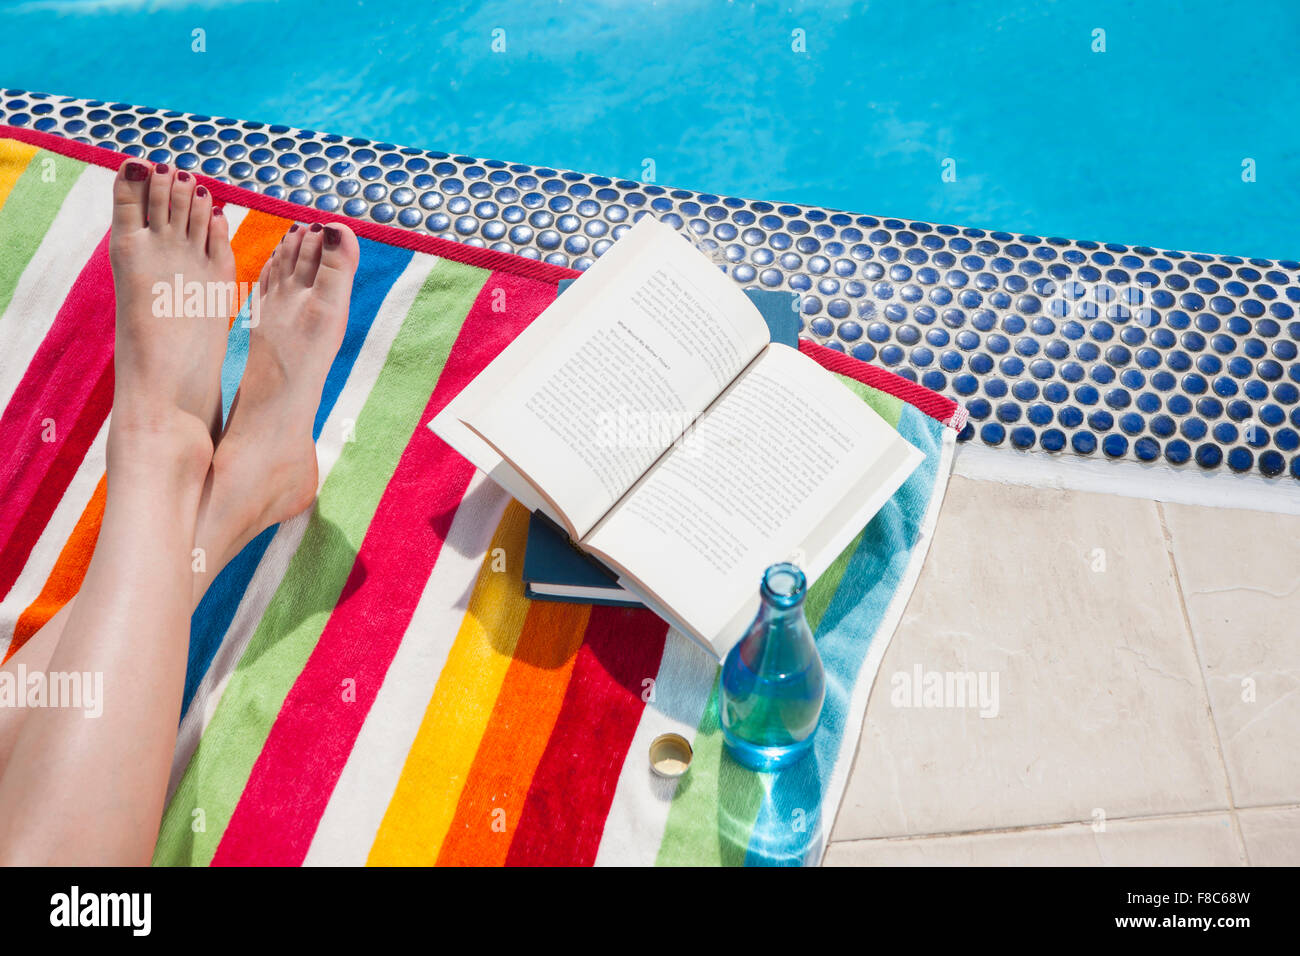 Hohen Winkel der gekreuzten Beinen einer Person auf einem bunten Tuch mit Büchern und Getränken am Rande eines Swimmingpools Stockfoto